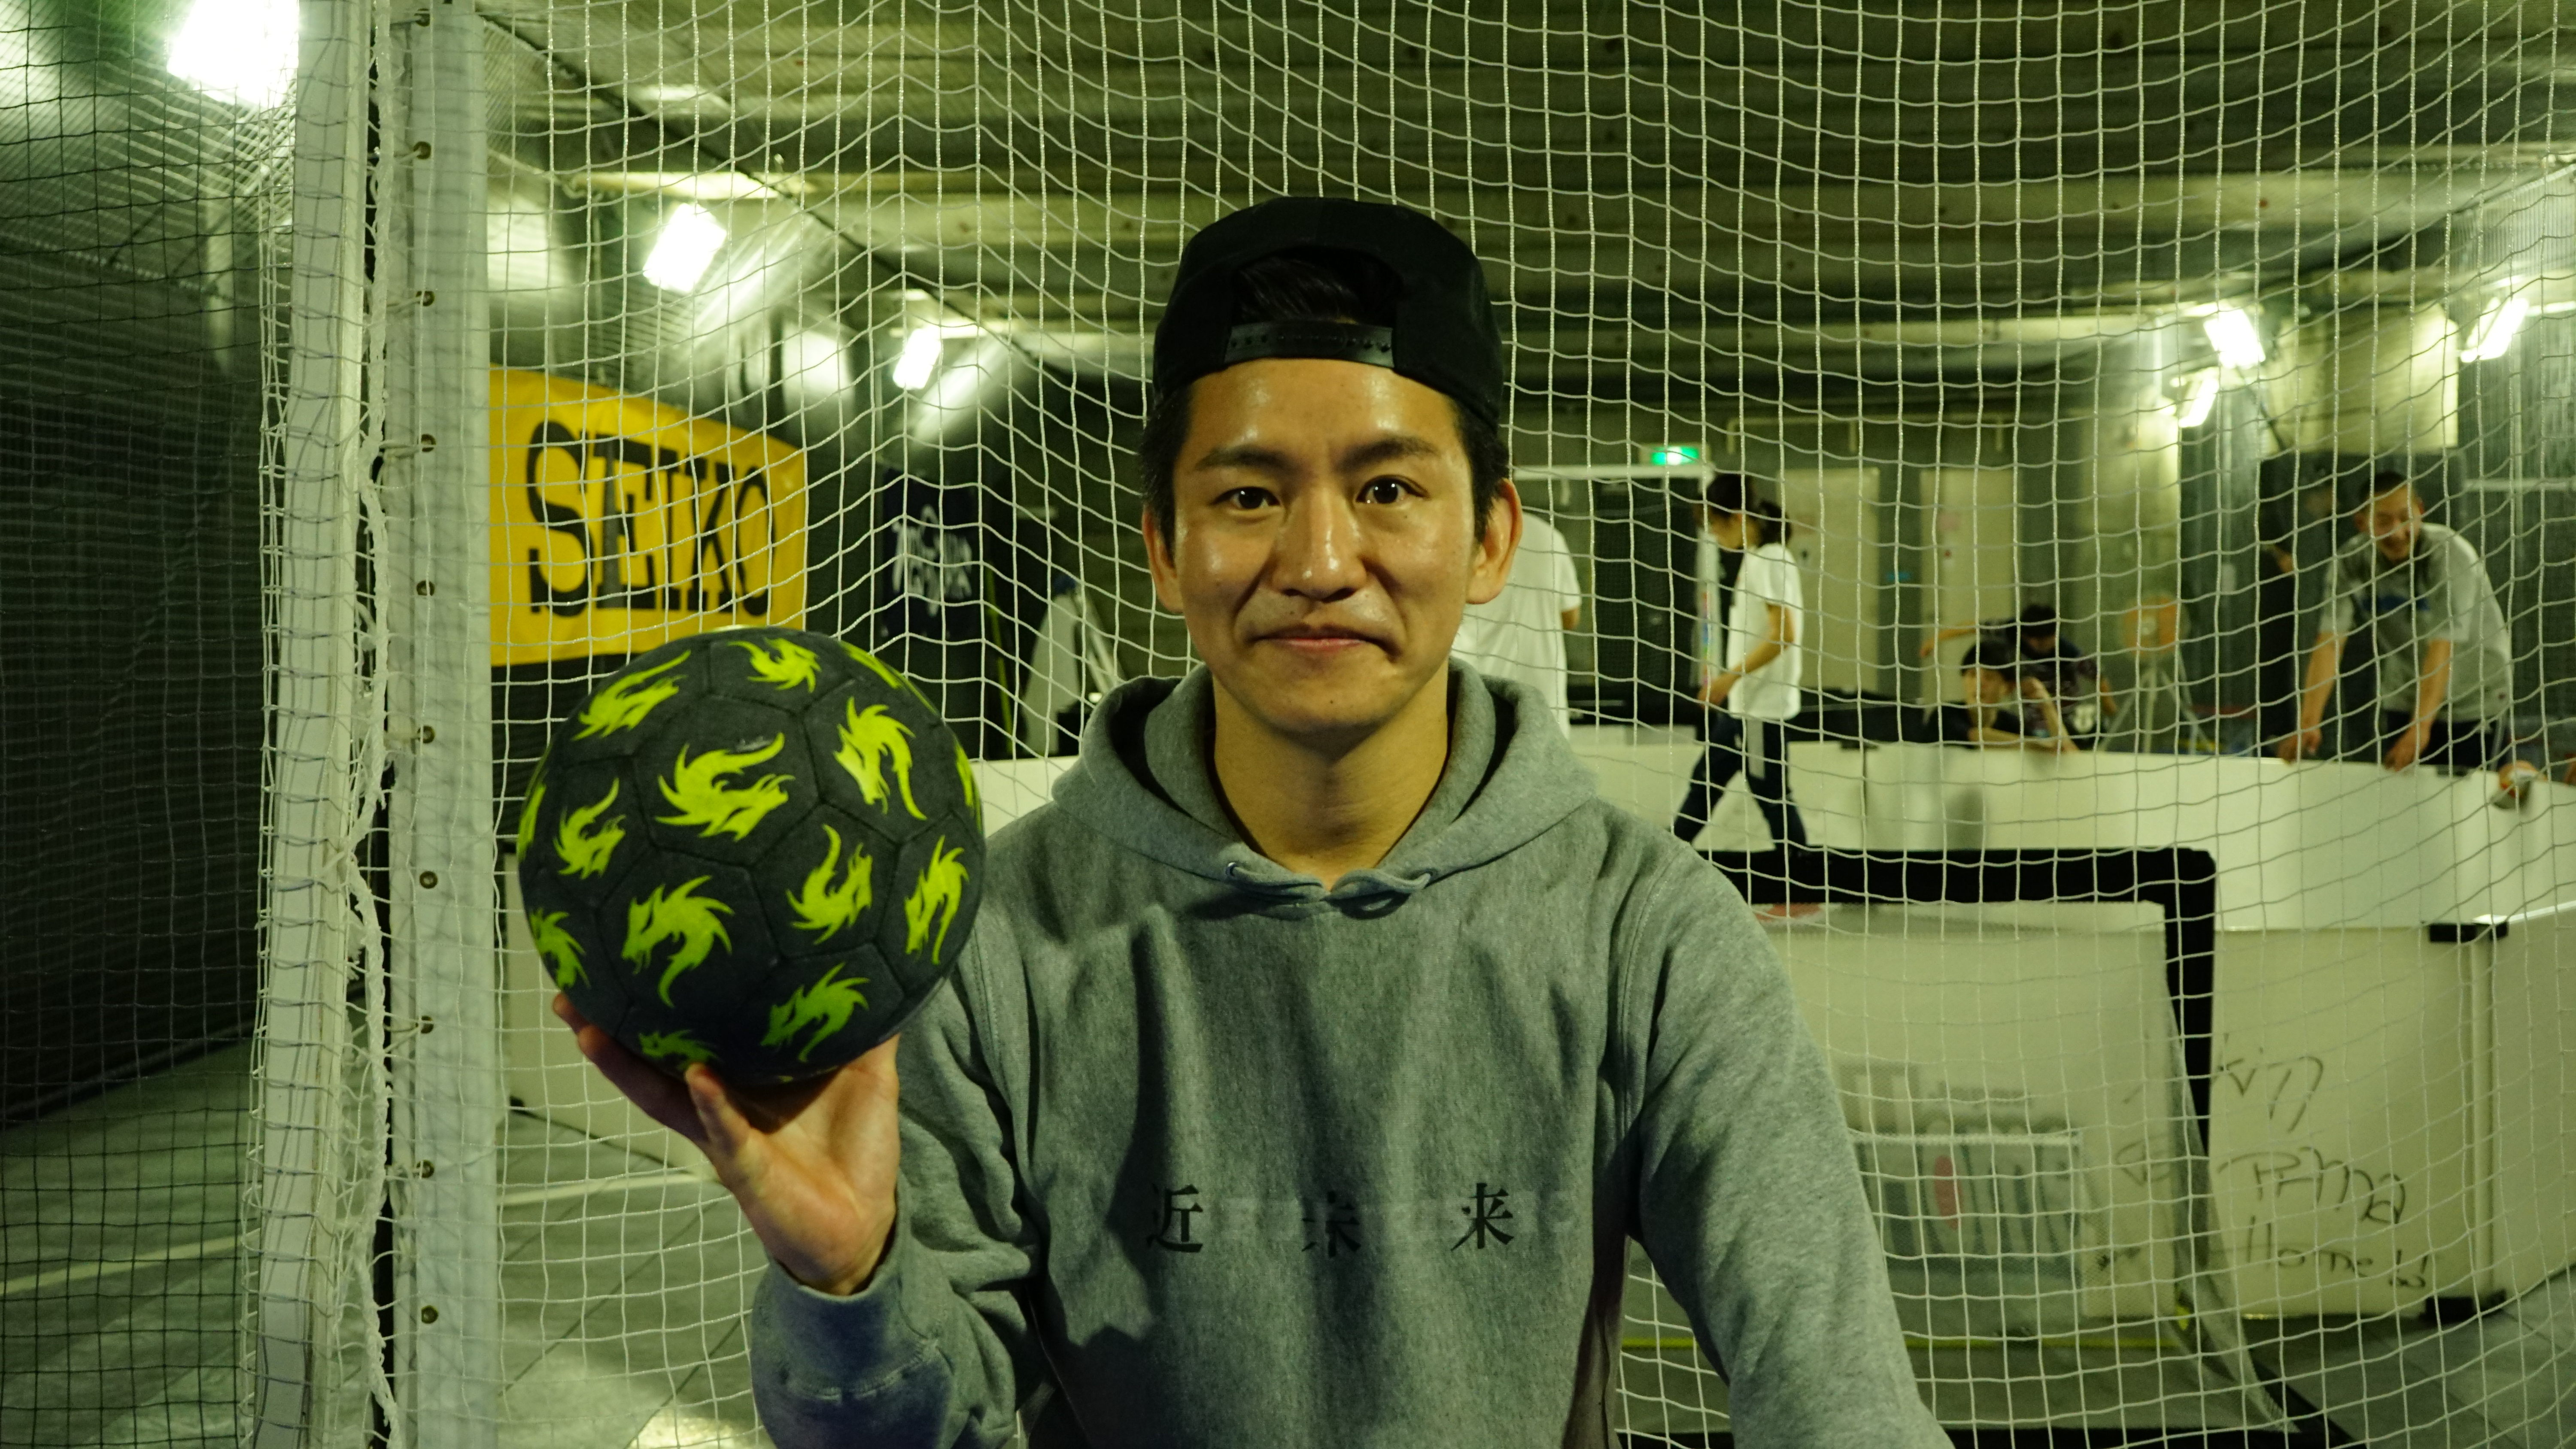 日本にストリートサッカーを根付かせたい 1on1初の全国大会 発起人 雨宮 太也さん インタビュー Shooty